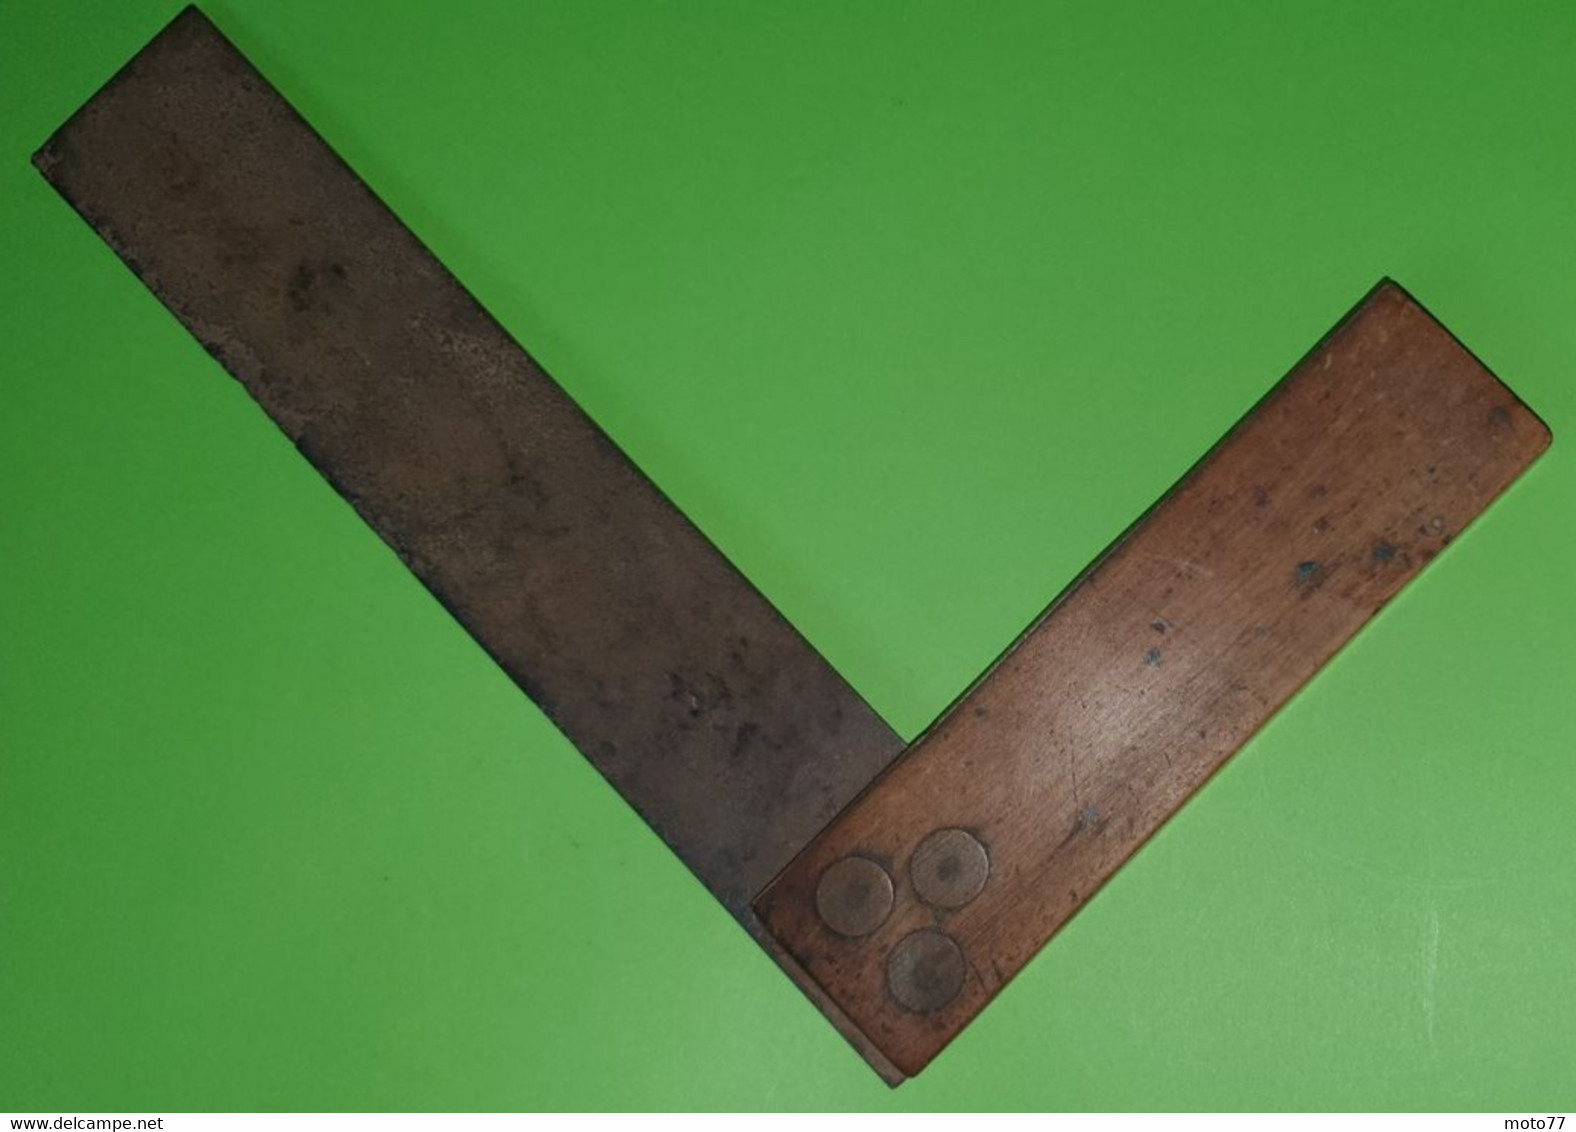 Ancien OUTIL spécial - ÉQUERRE - bois , acier et 3 axes laiton - "Laissé dans son jus"- vers 1920 1950